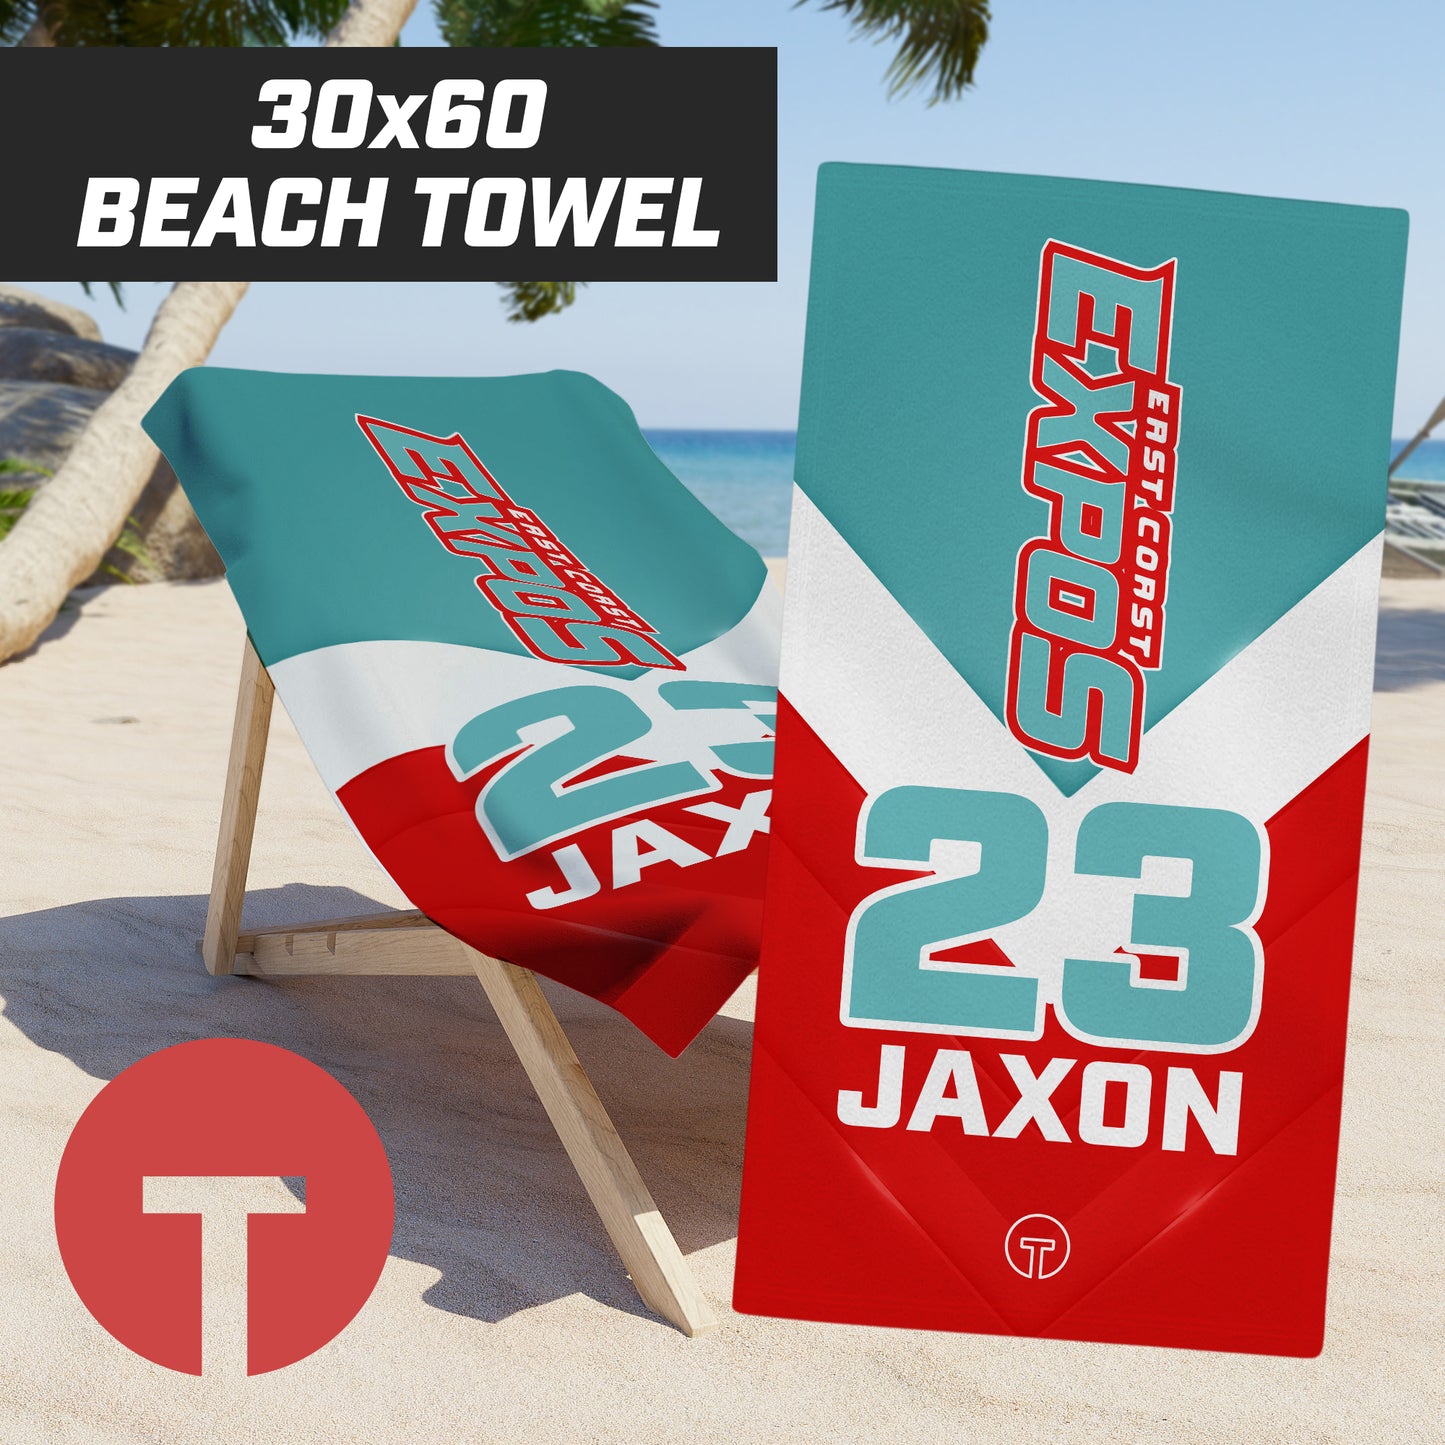 East Coast Expos - 30"x60" Beach Towel